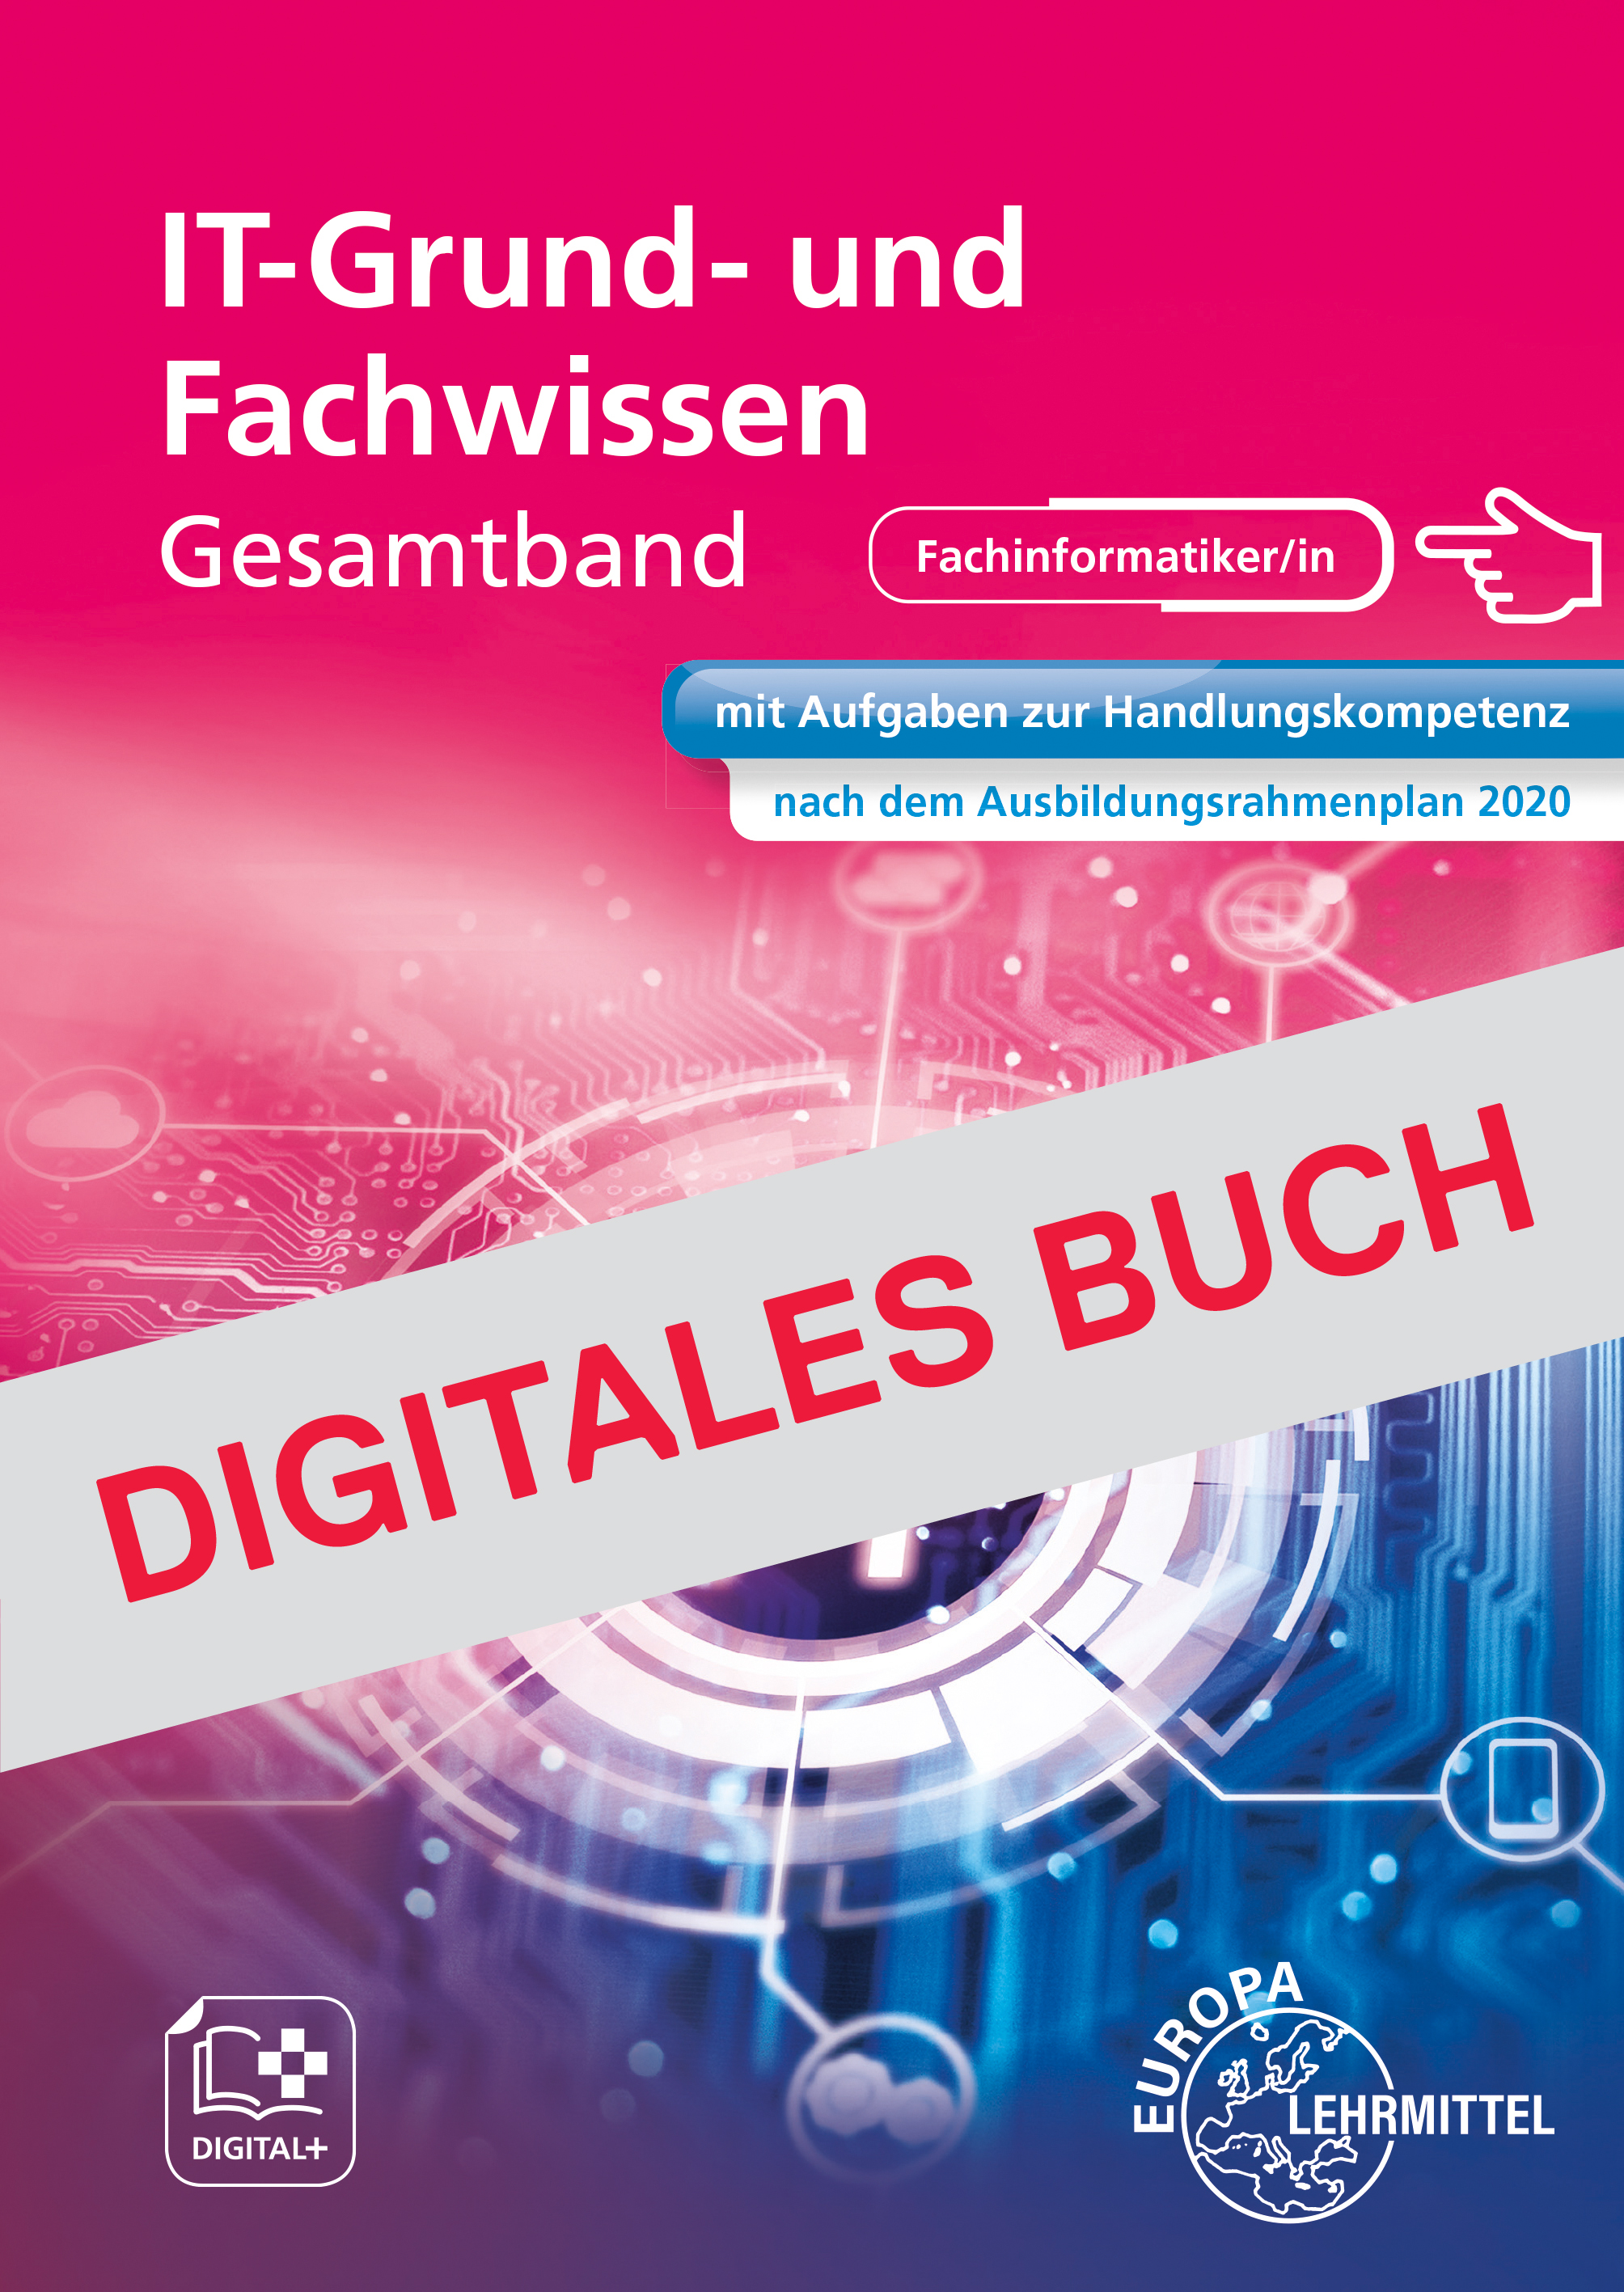 IT Grund- und Fachwissen Gesamtband - Digitales Buch